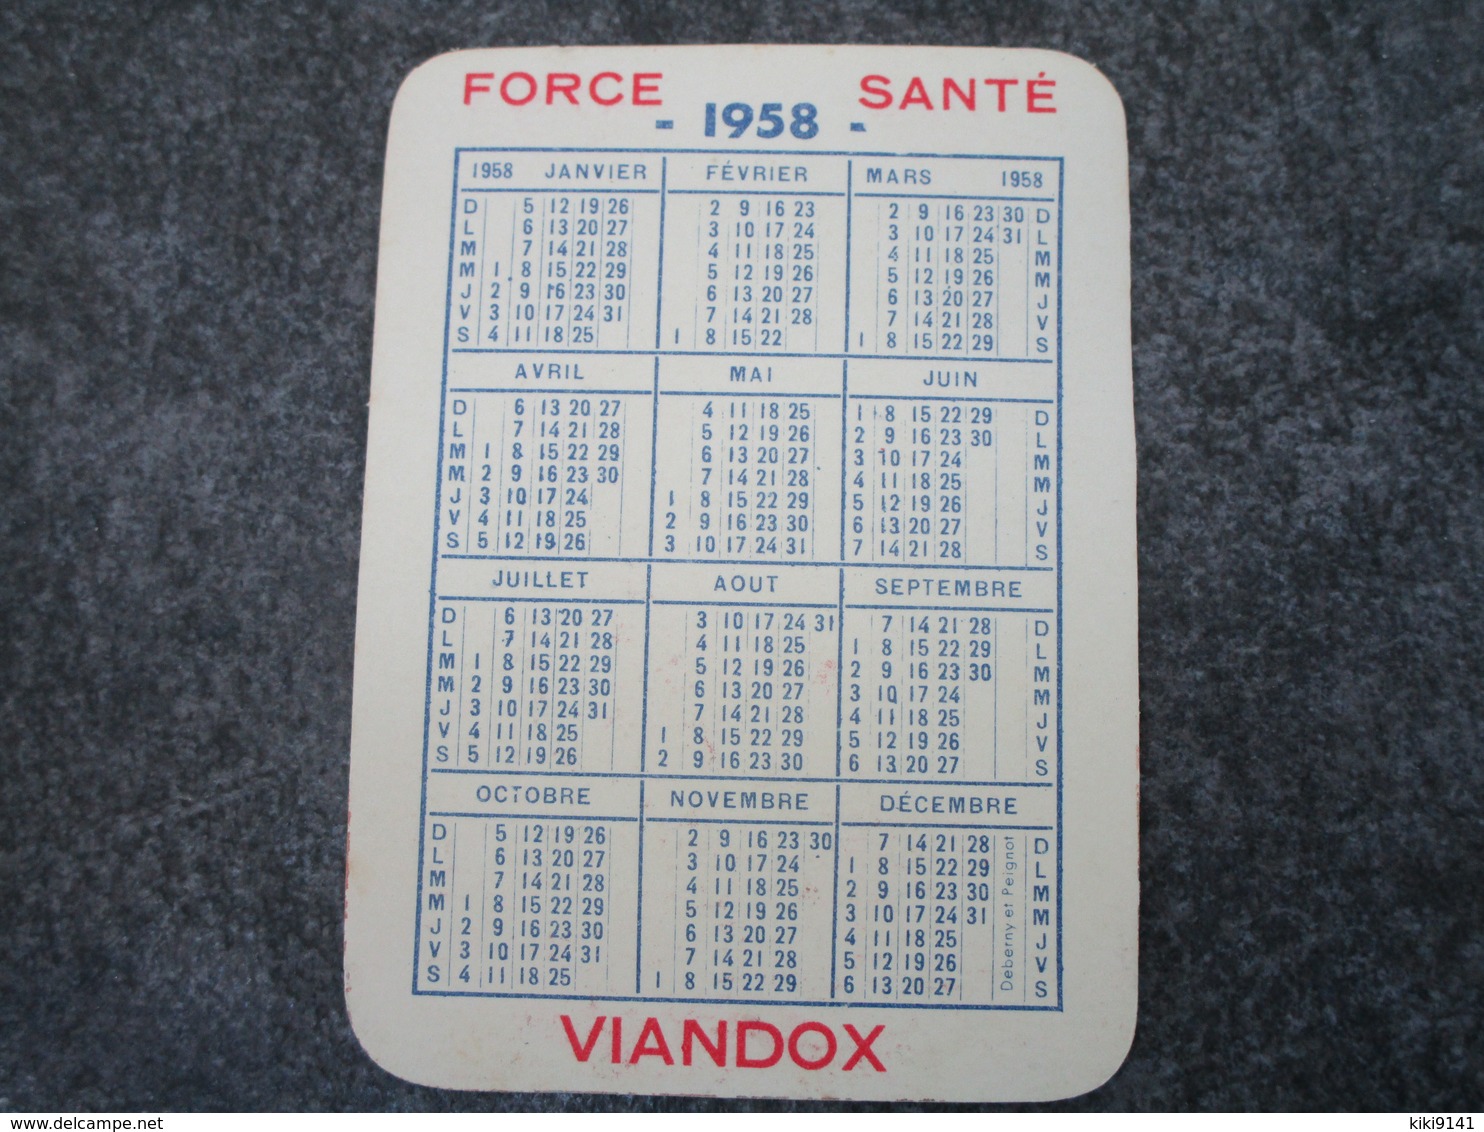 VIANDOX - Force-Santé - Année 1958 - Kleinformat : 1941-60